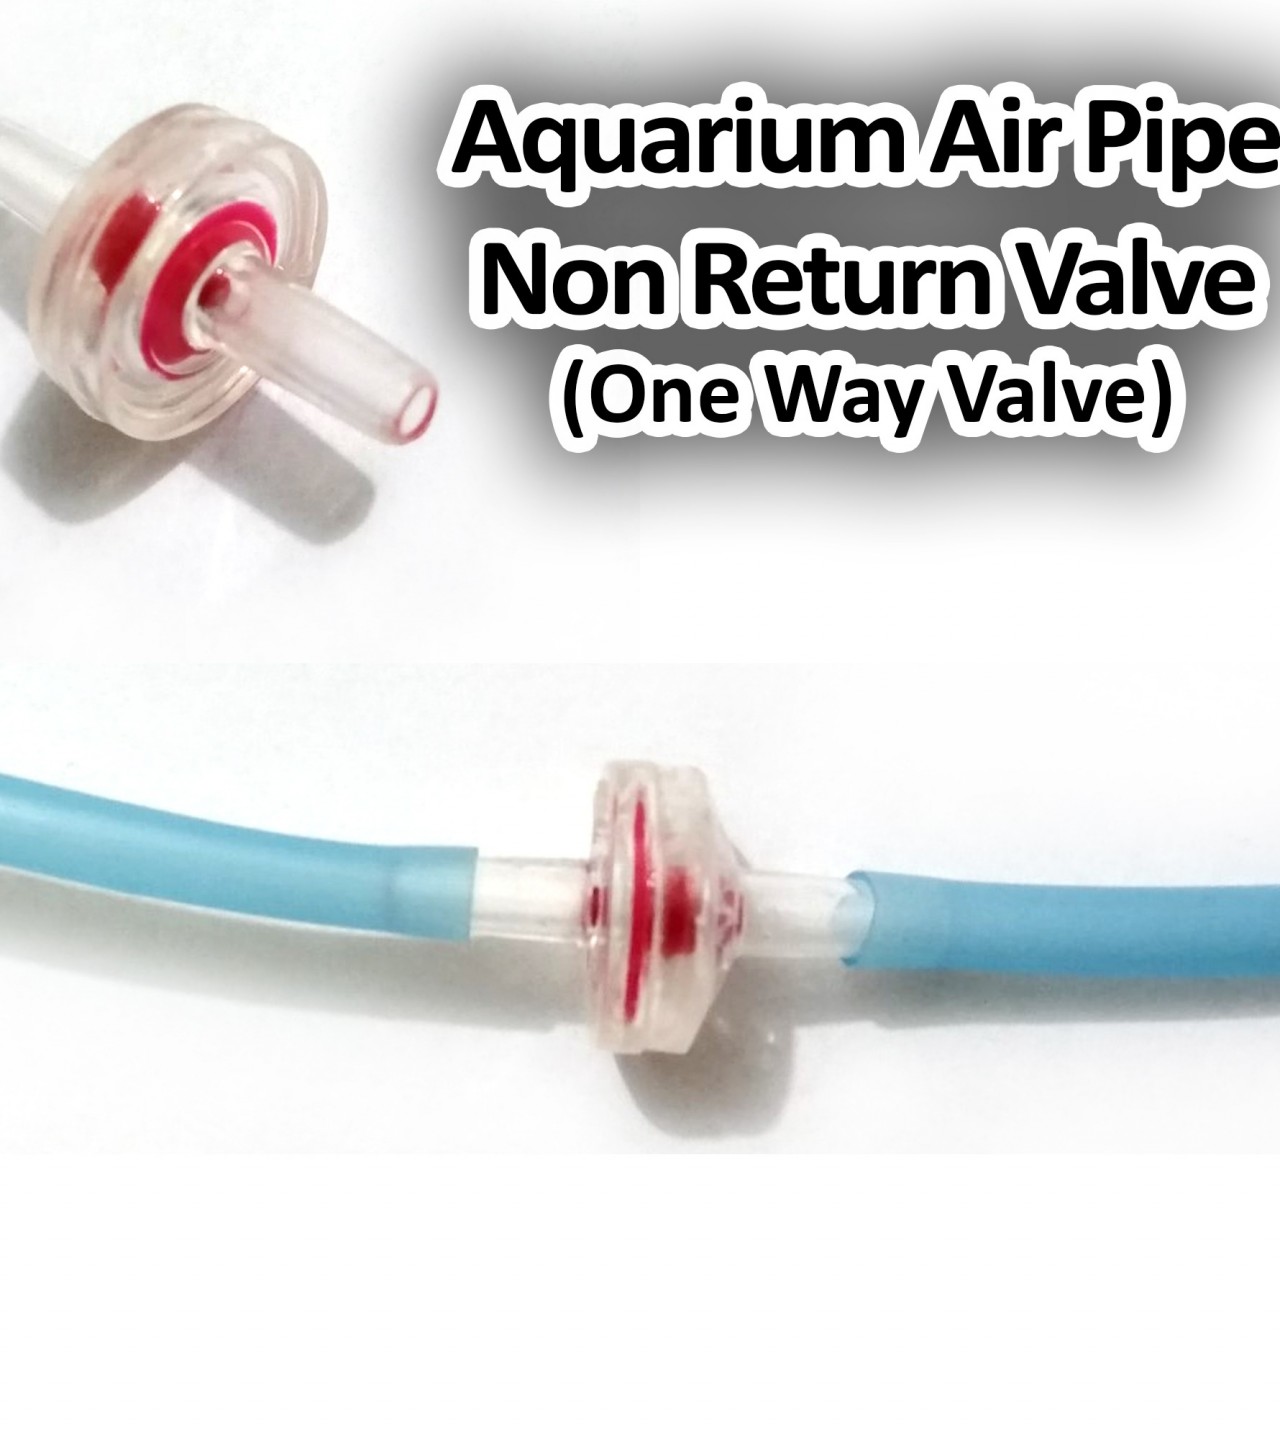 2 Pieces Non Return Valve for Fish Aquarium Air pipe - One way Valve for Aquarium Pipe